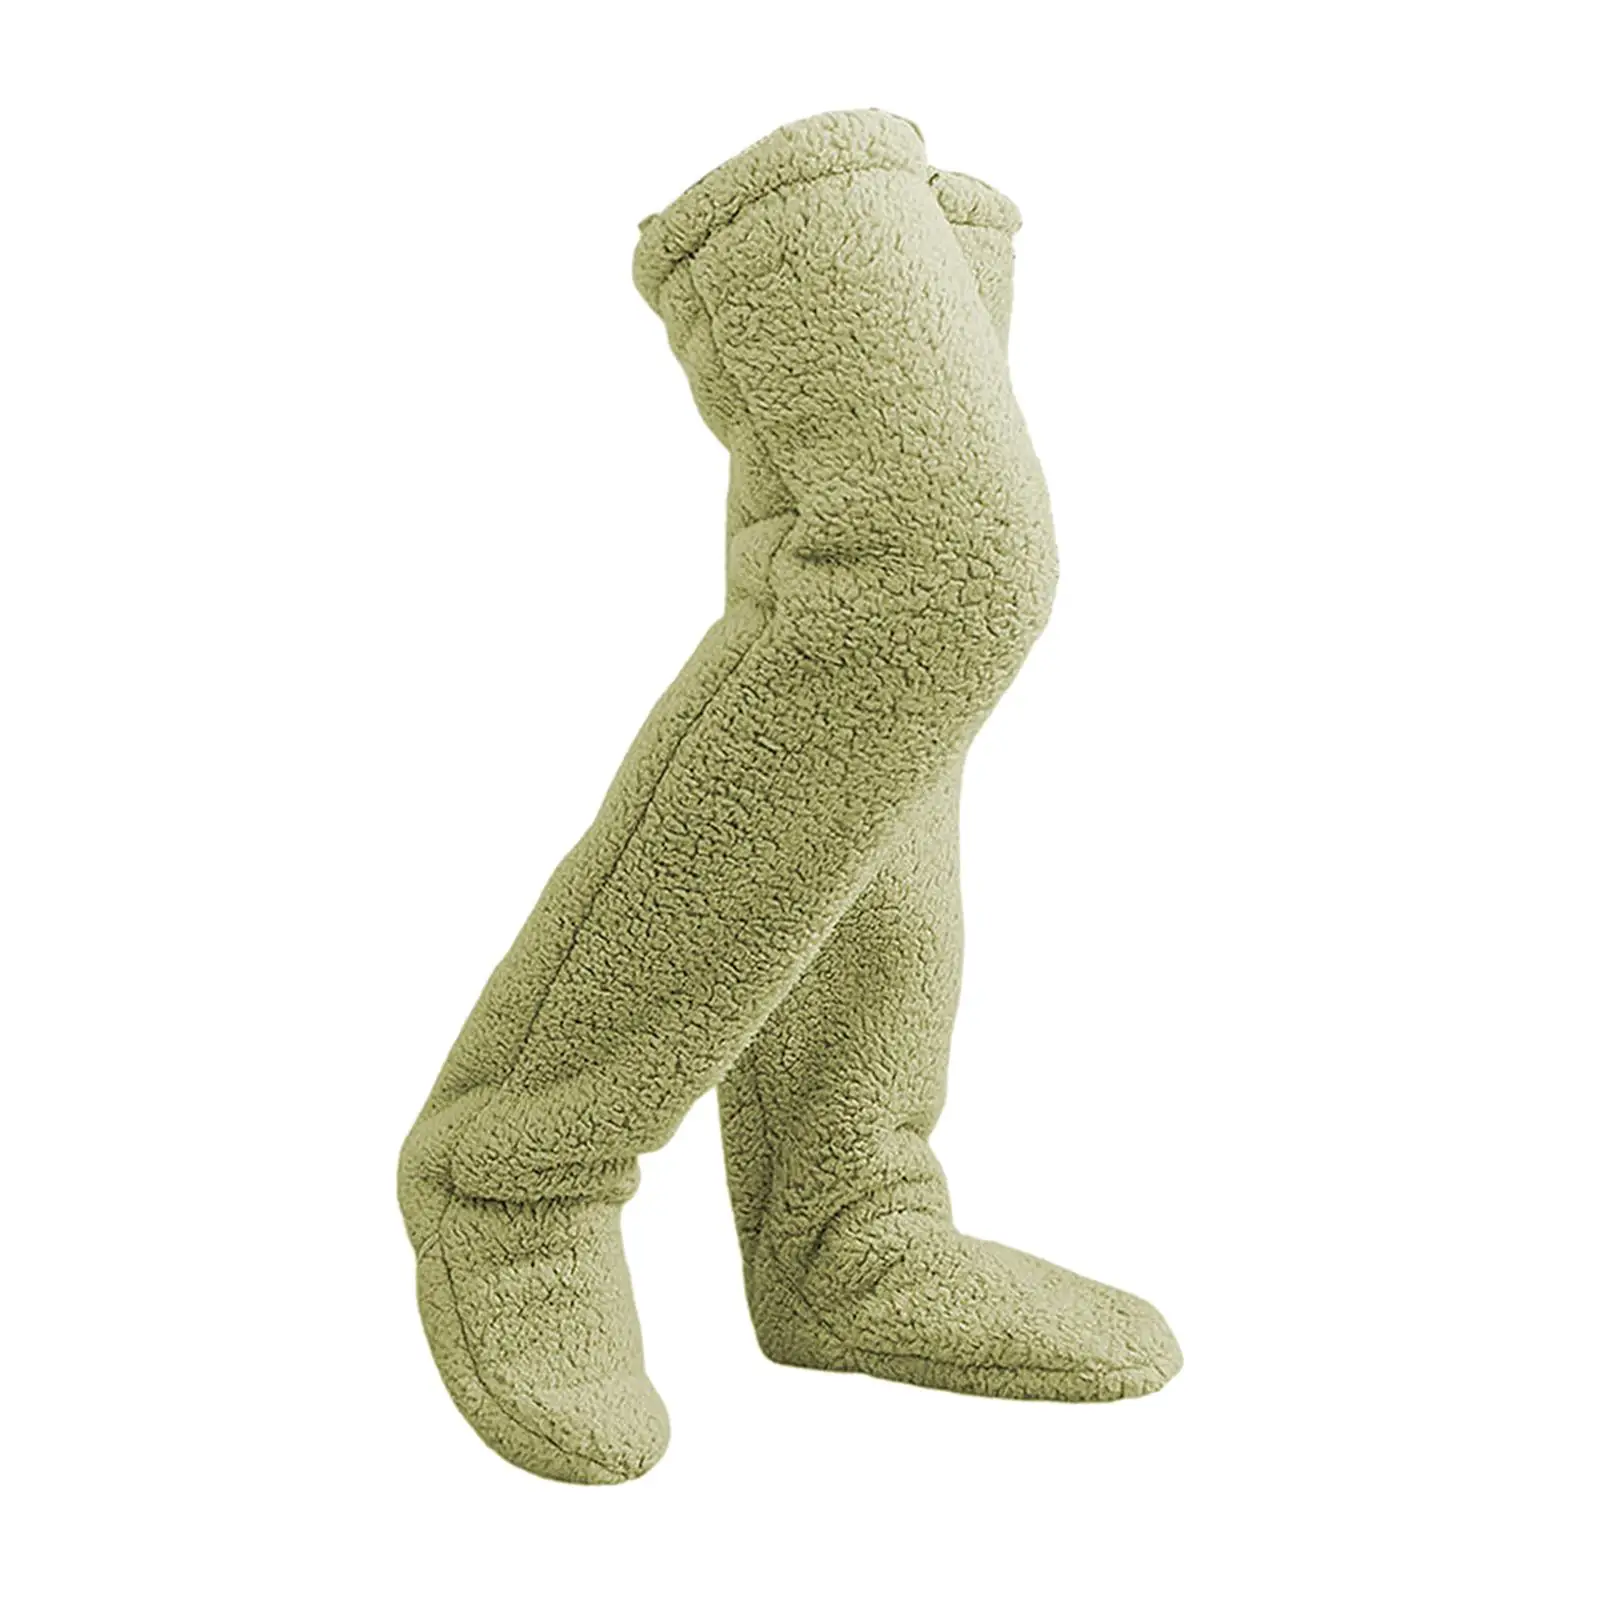 Plush Leg Warmers Thigh High Socks Costume Winter Sleeping Socks Slipper Stockings Over Knee High Socks for Apartment Bedroom